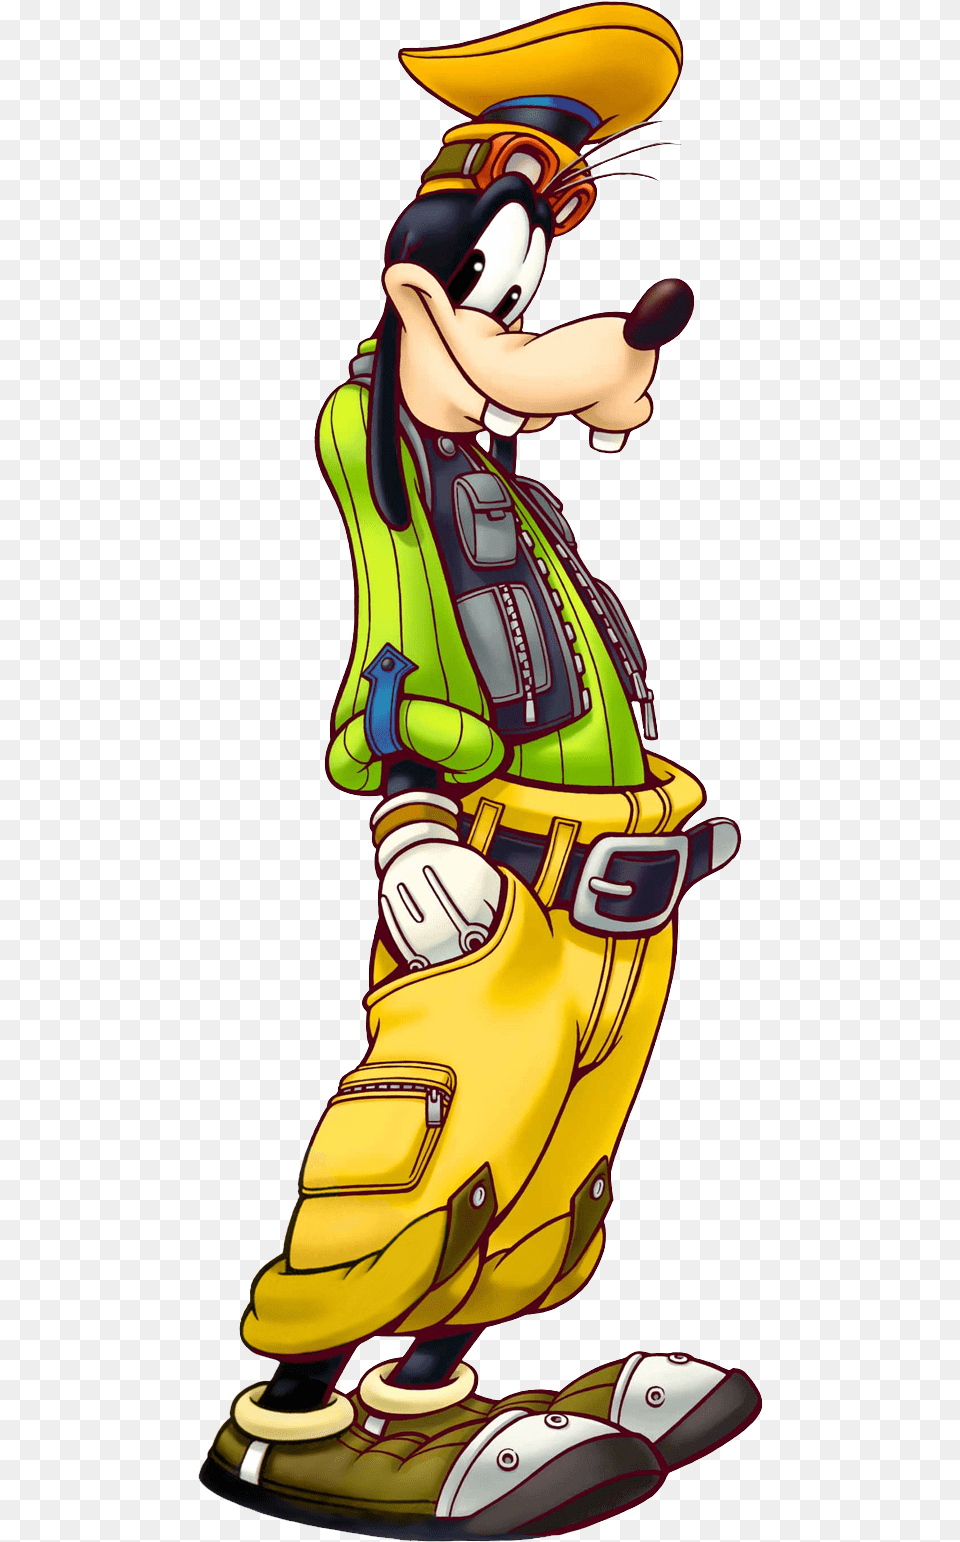 Kingdom Hearts Kingdom Hearts Donald Goofy, Book, Comics, Publication, Cartoon Png Image